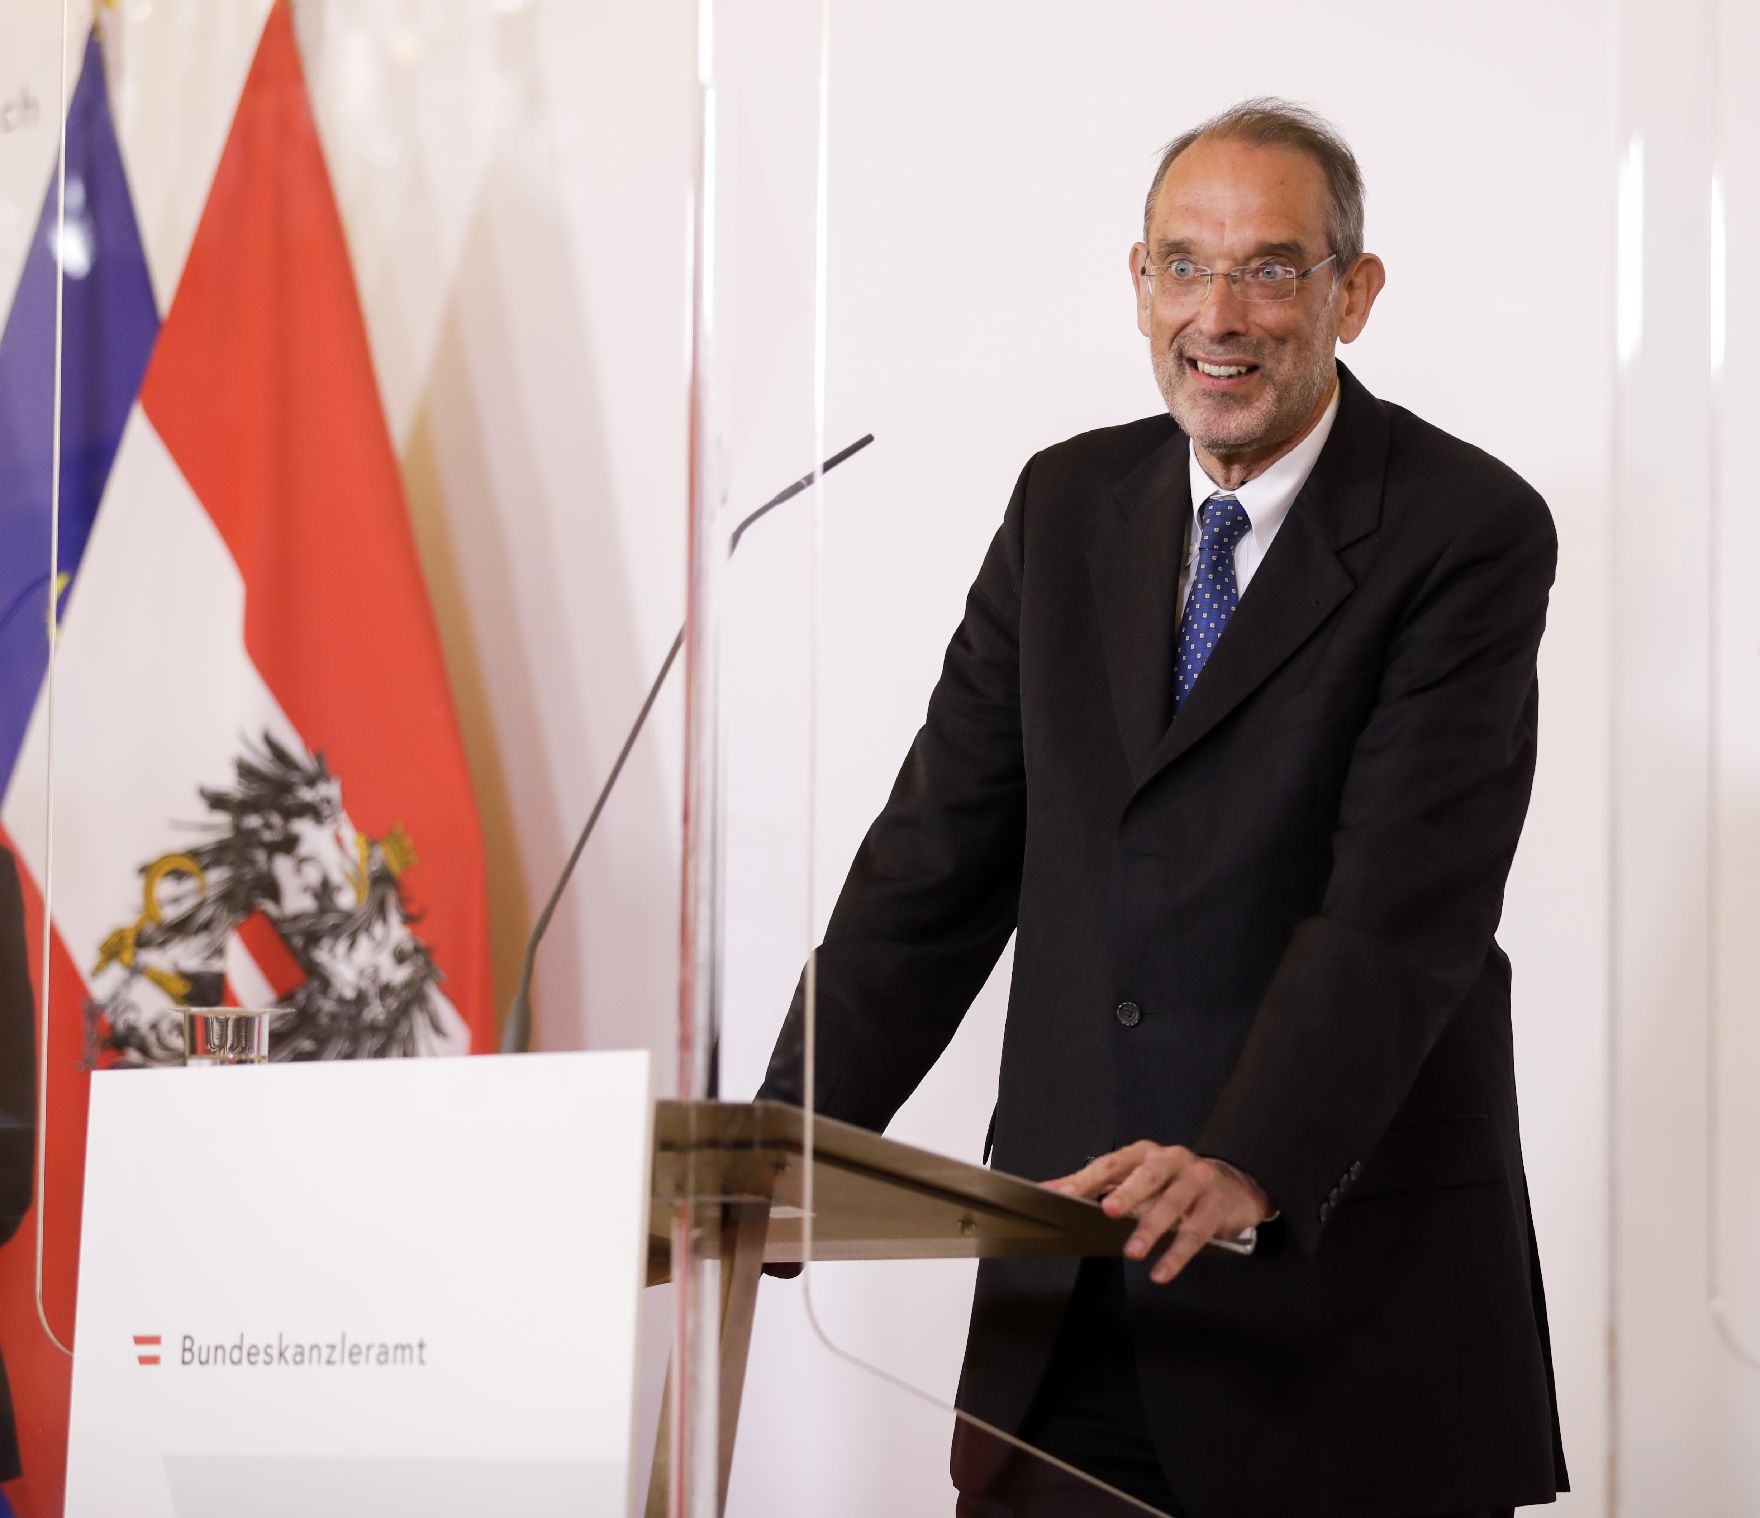 Am 4. Mai 2020 fand ein Pressestatement zu den Maßnahmen gegen die Krise im Bundeskanzleramt statt. Im Bild Wissenschaftsminister Heinz Faßmann.